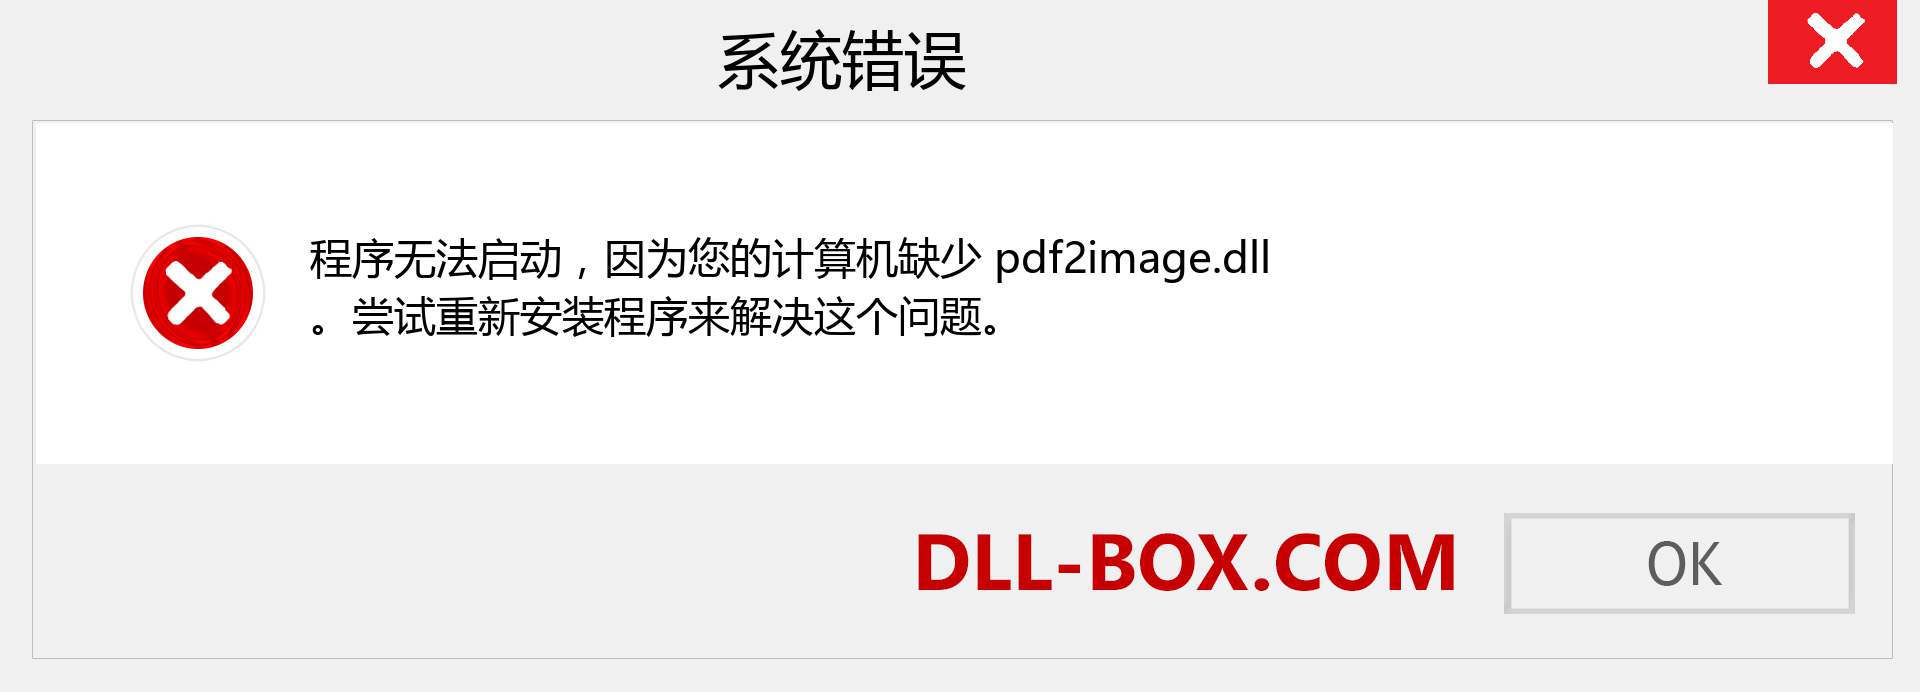 pdf2image.dll 文件丢失？。 适用于 Windows 7、8、10 的下载 - 修复 Windows、照片、图像上的 pdf2image dll 丢失错误